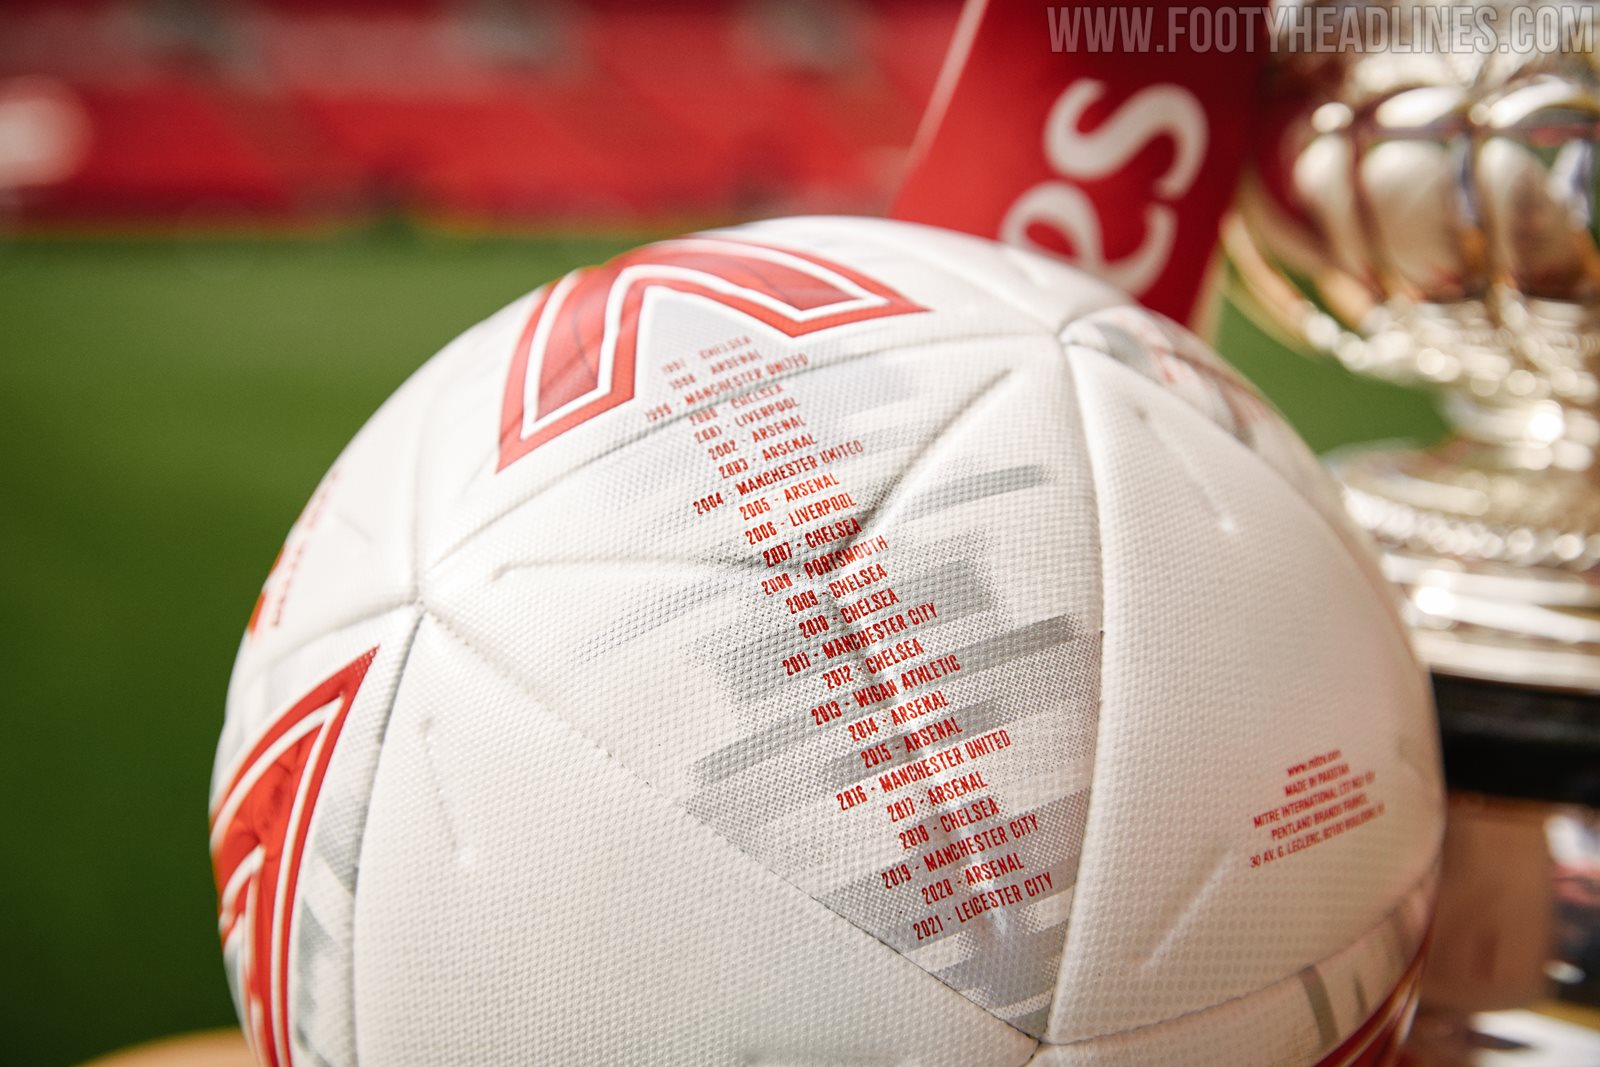 Limitierte Auflage des Mitre 2022 FA Cup Final Balls enthüllt - mit allen Gewinnern seit 1872